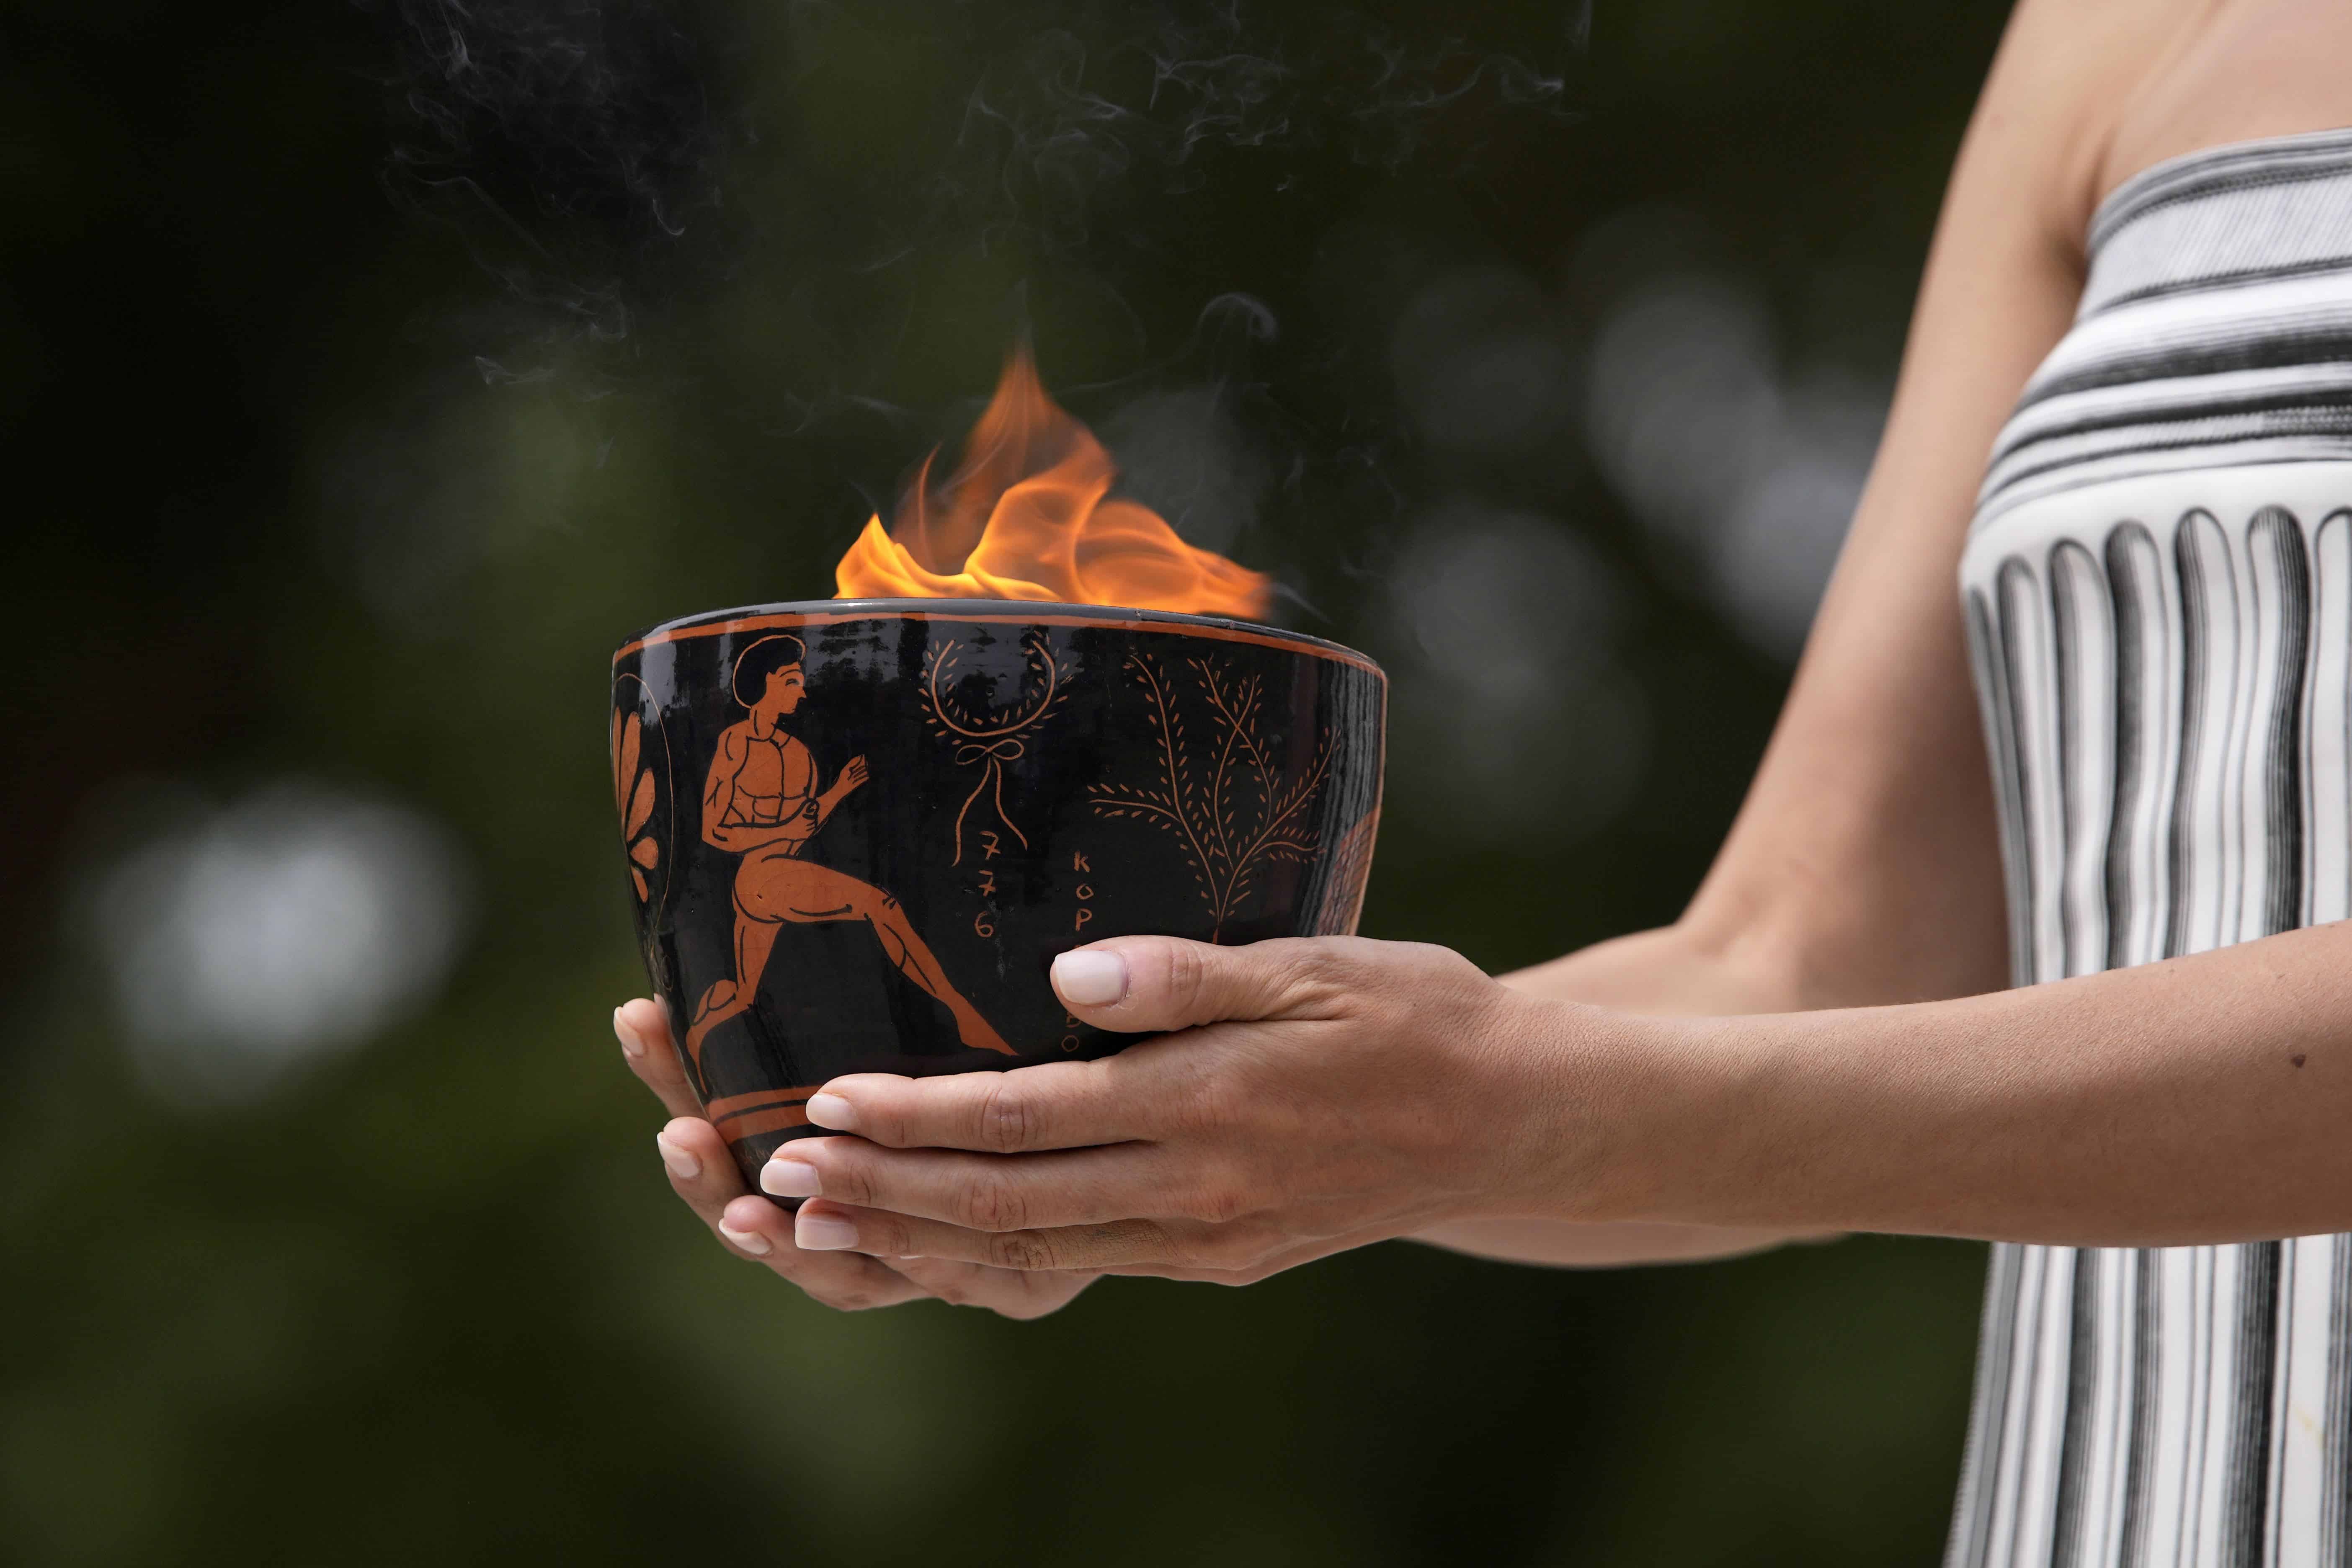 Un artista sostiene una vasija de cerámica con la llama durante la ceremonia oficial de encendido de la llama de los Juegos Olímpicos de París, en el sitio de la Antigua Olimpia, Grecia.